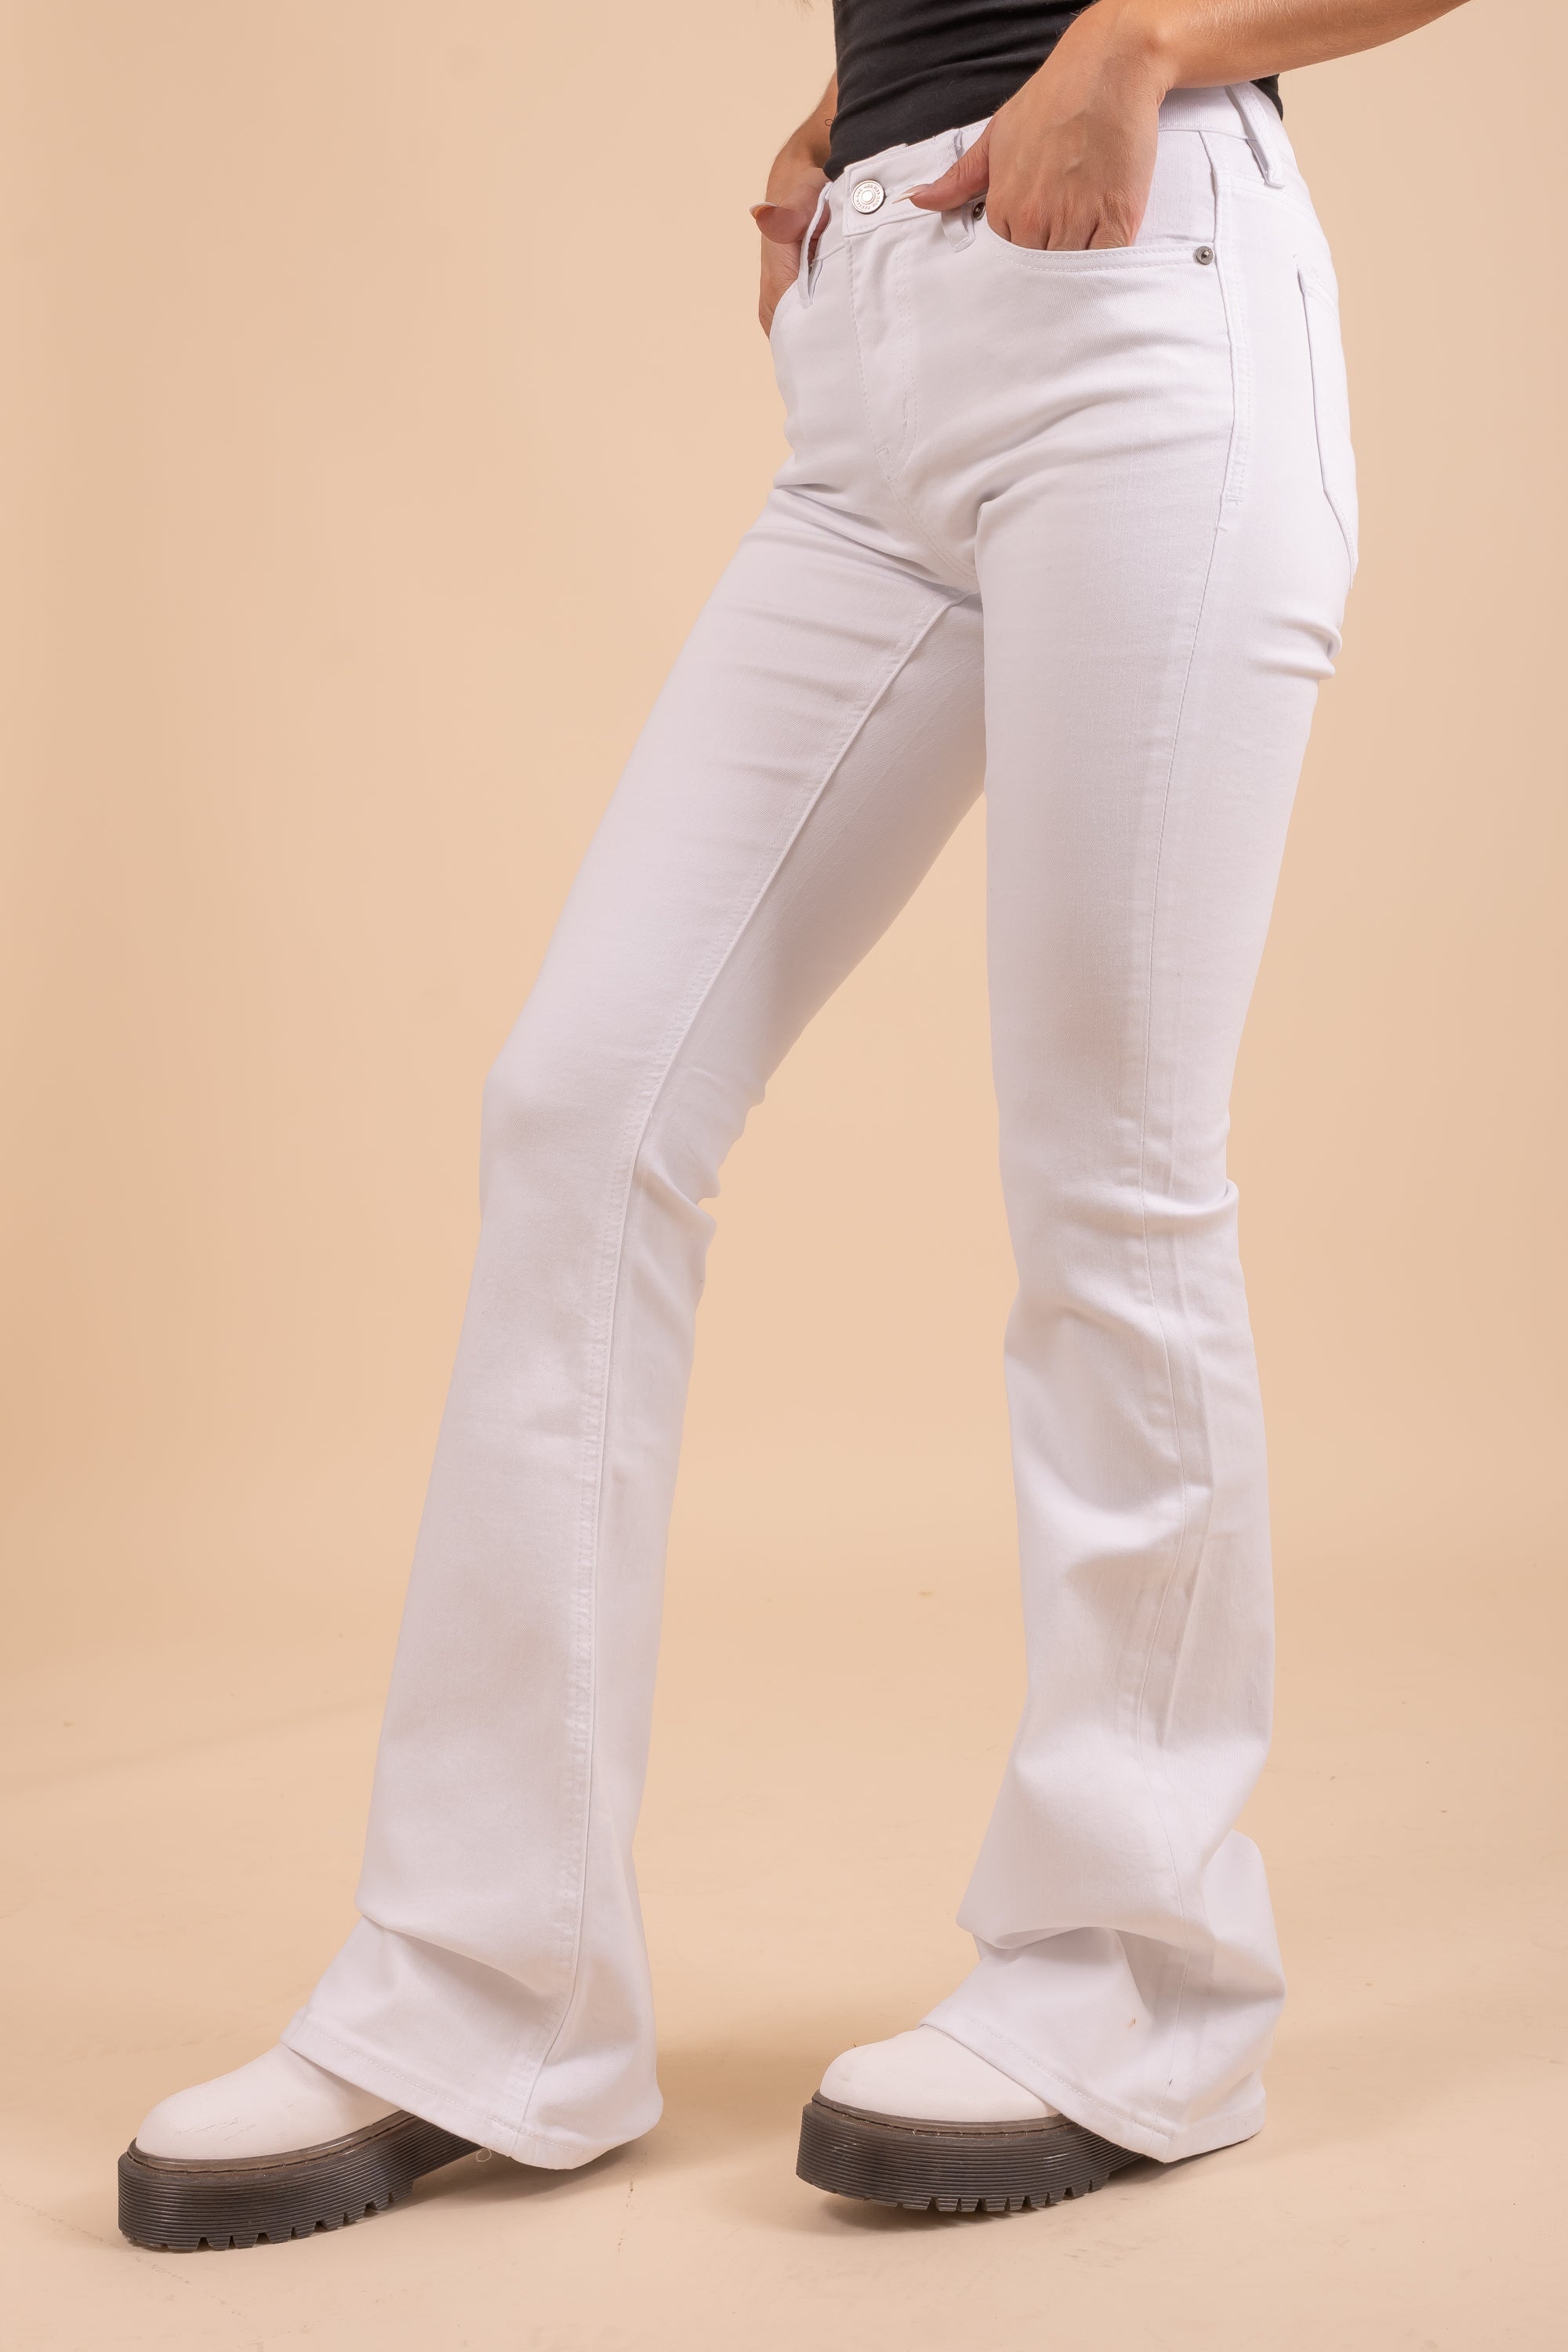 KanCan Flared White Denim Jeans